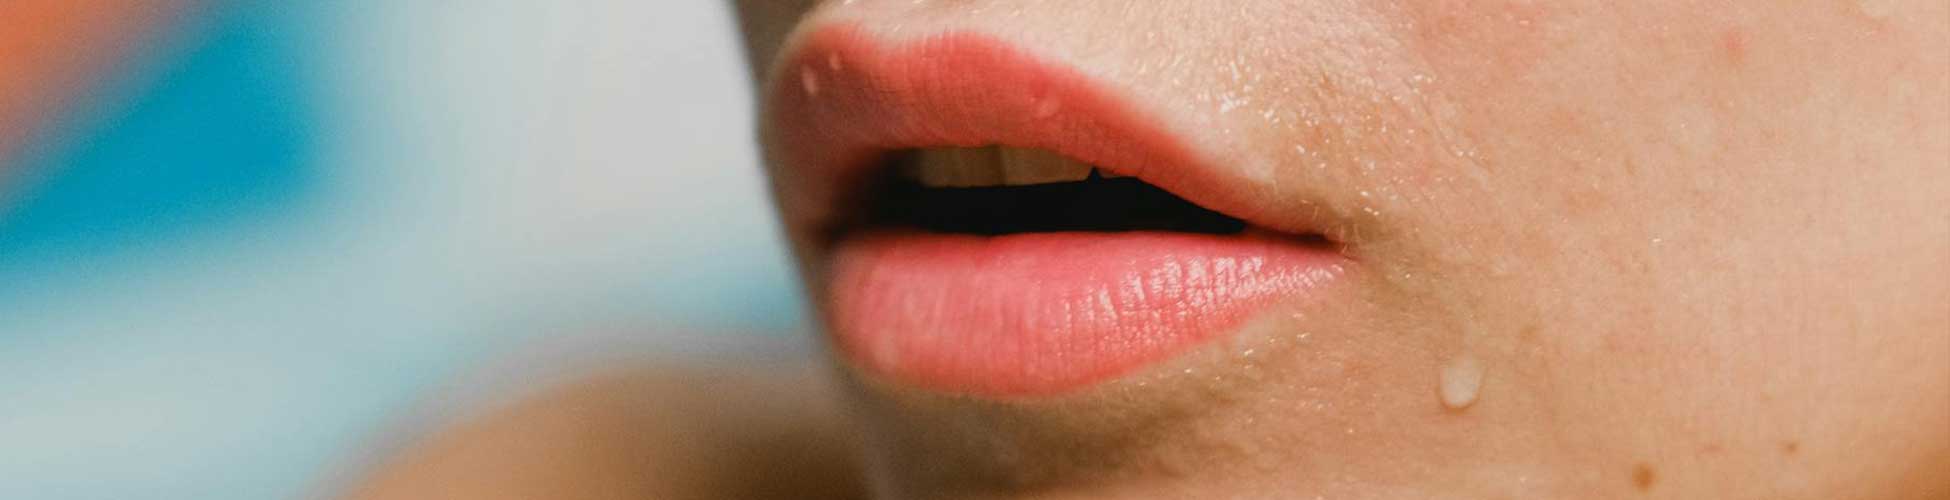 beneficios del aumento de labios en la clínica de medicina estética en Madrid IME